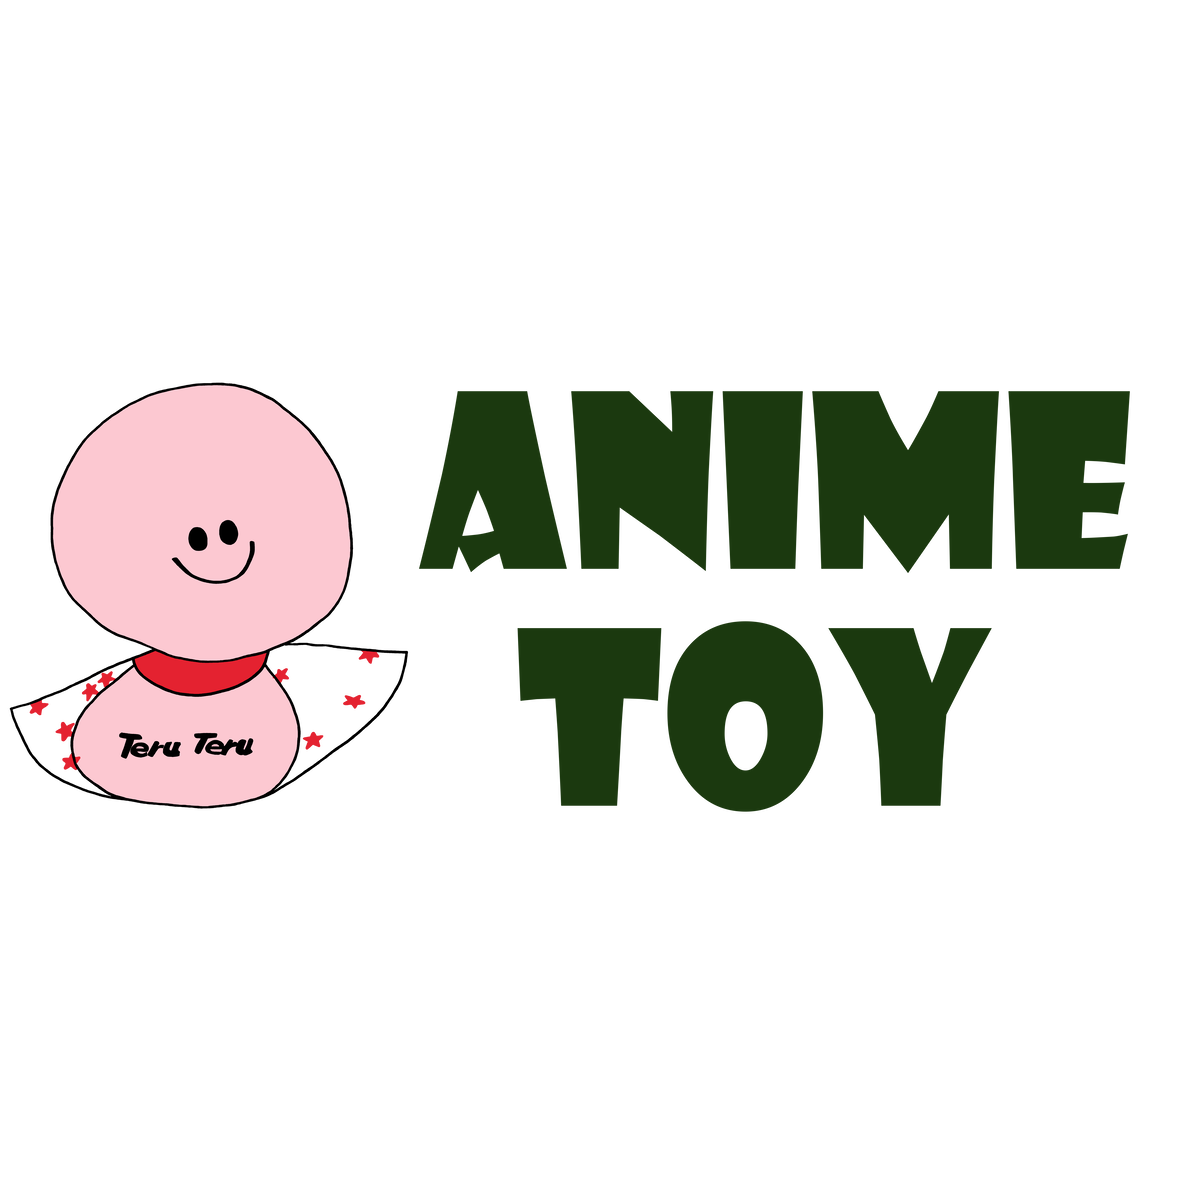 僕のヒーローアカデミア Anime Toy 海外 アニメ キャラクター グッズ販売